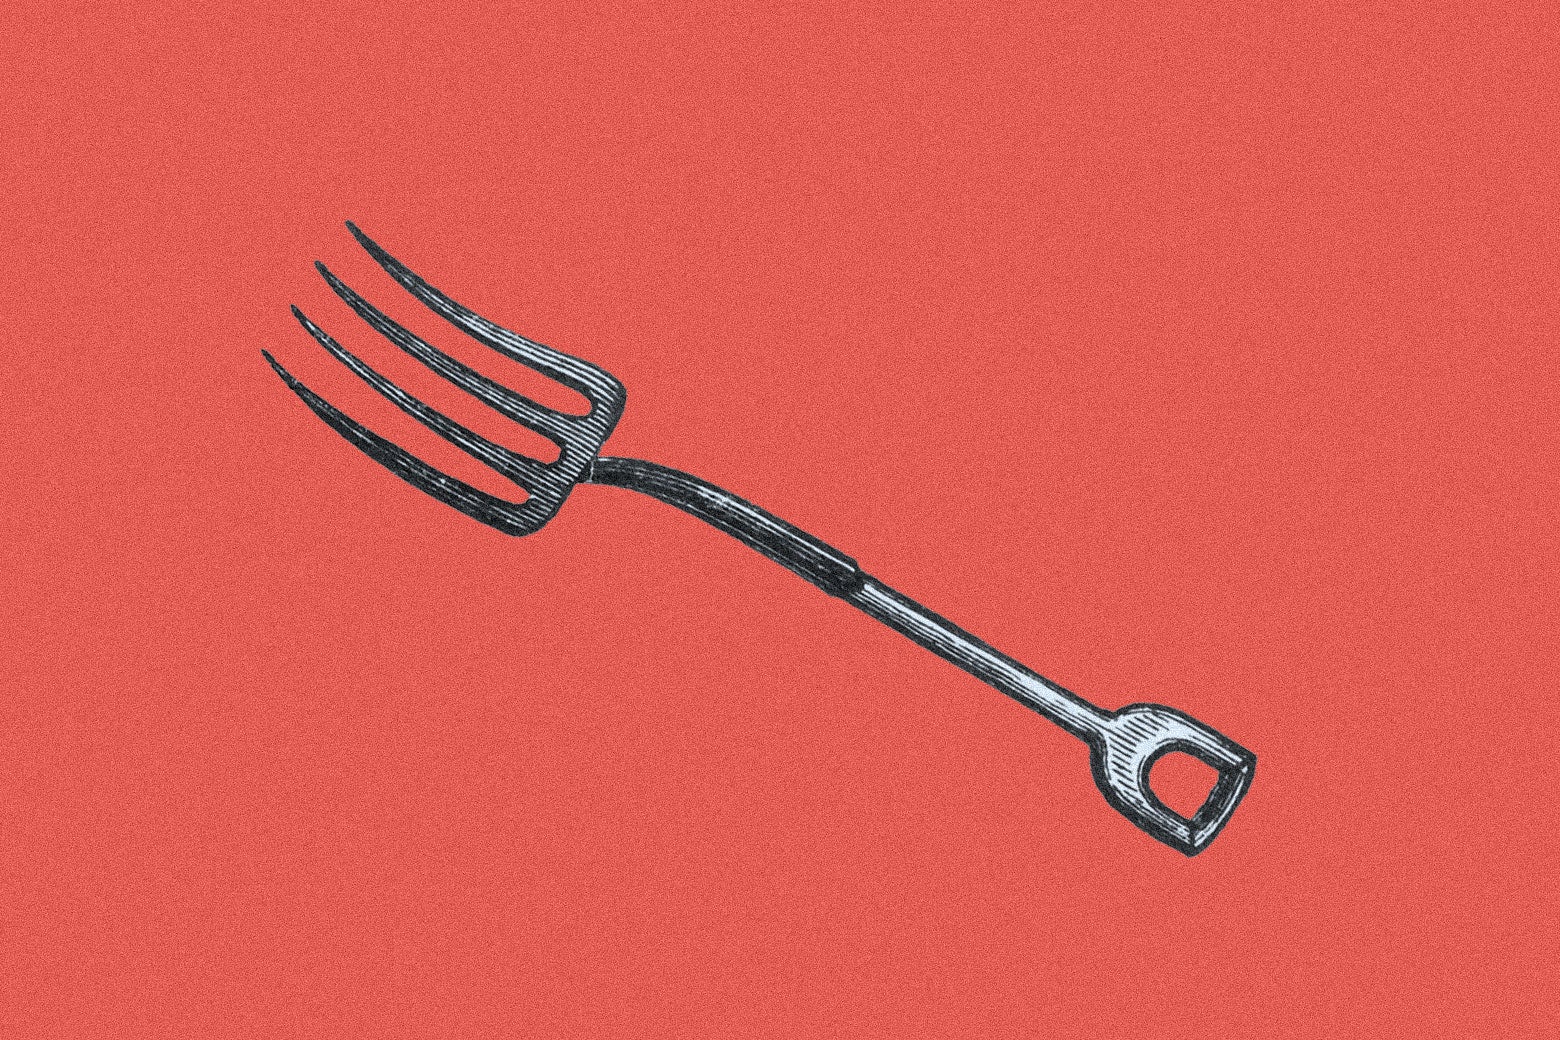 Illustration of a pitchfork.